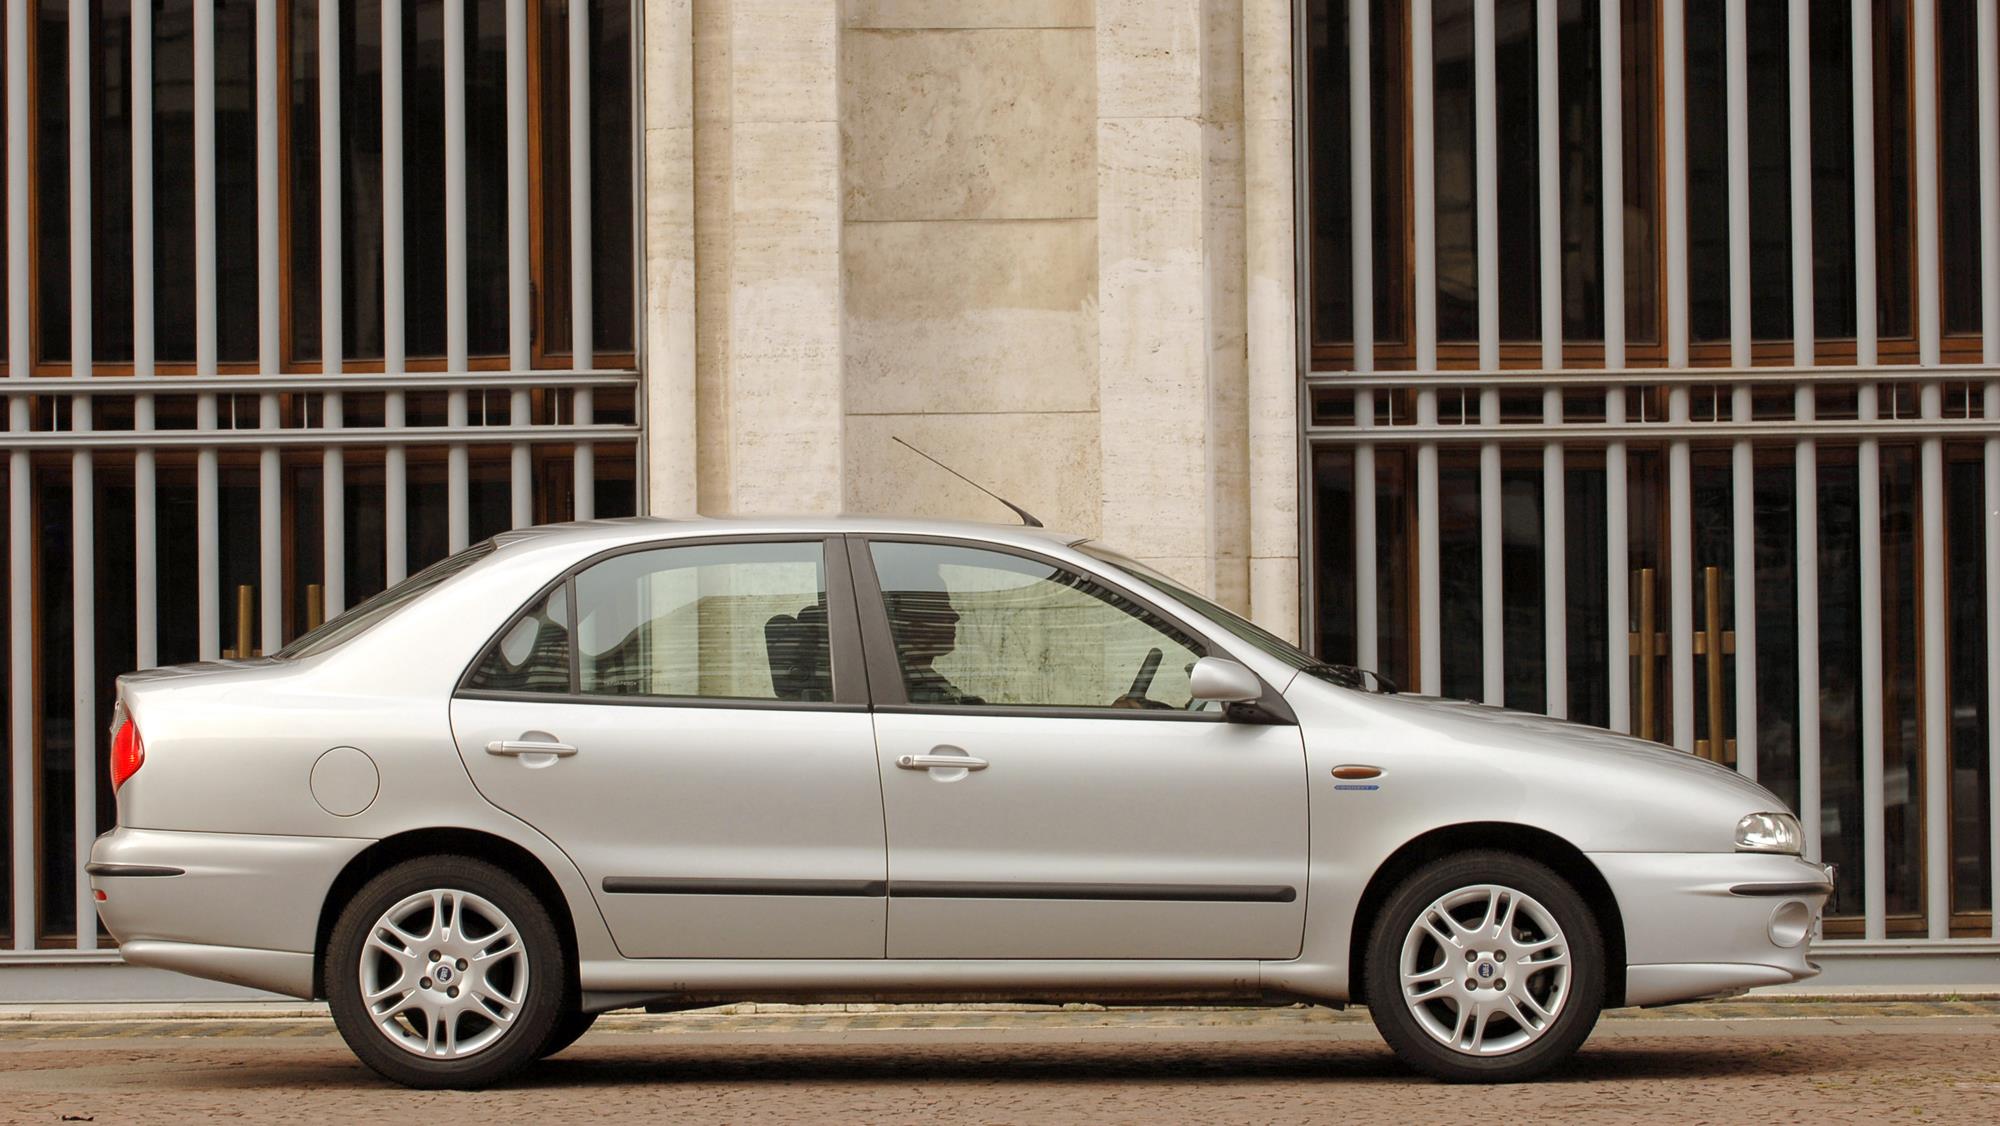 Marea SX 1.6 da Fiat, sedã modelo 2006, testado pela revista Quatro Rodas.